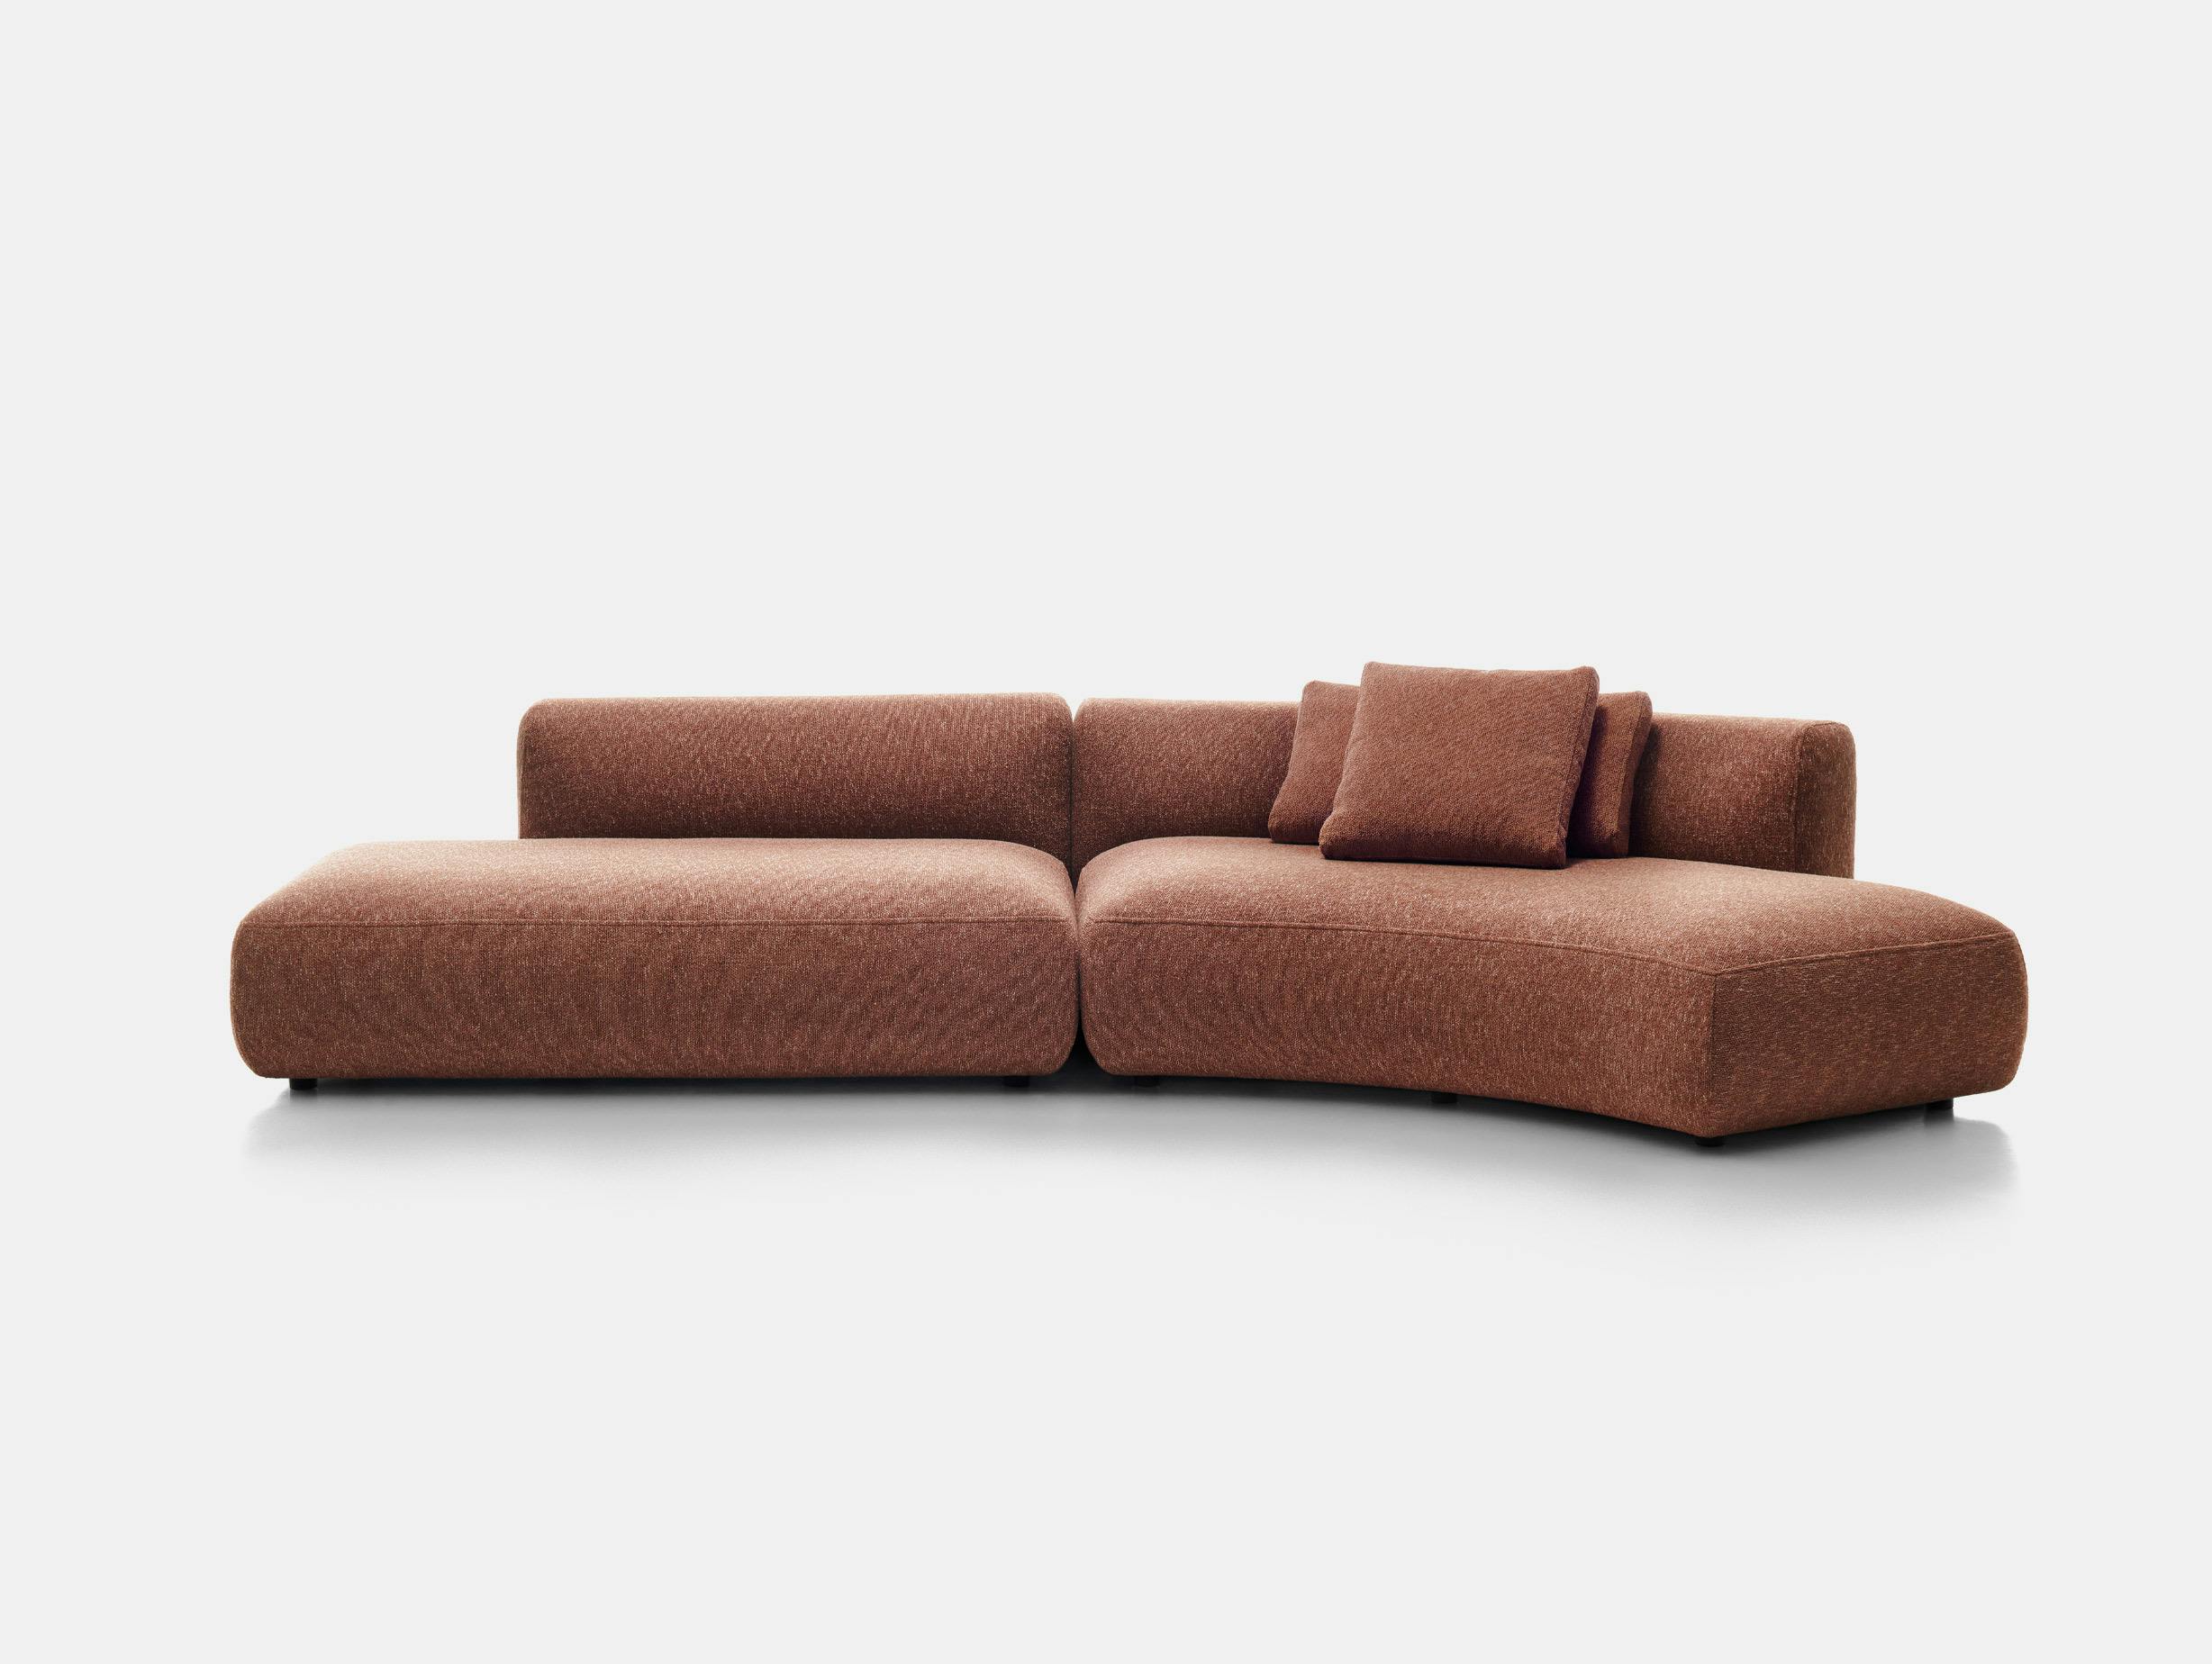 Mdf italia francesco rota cosy curve sofa configuration 1